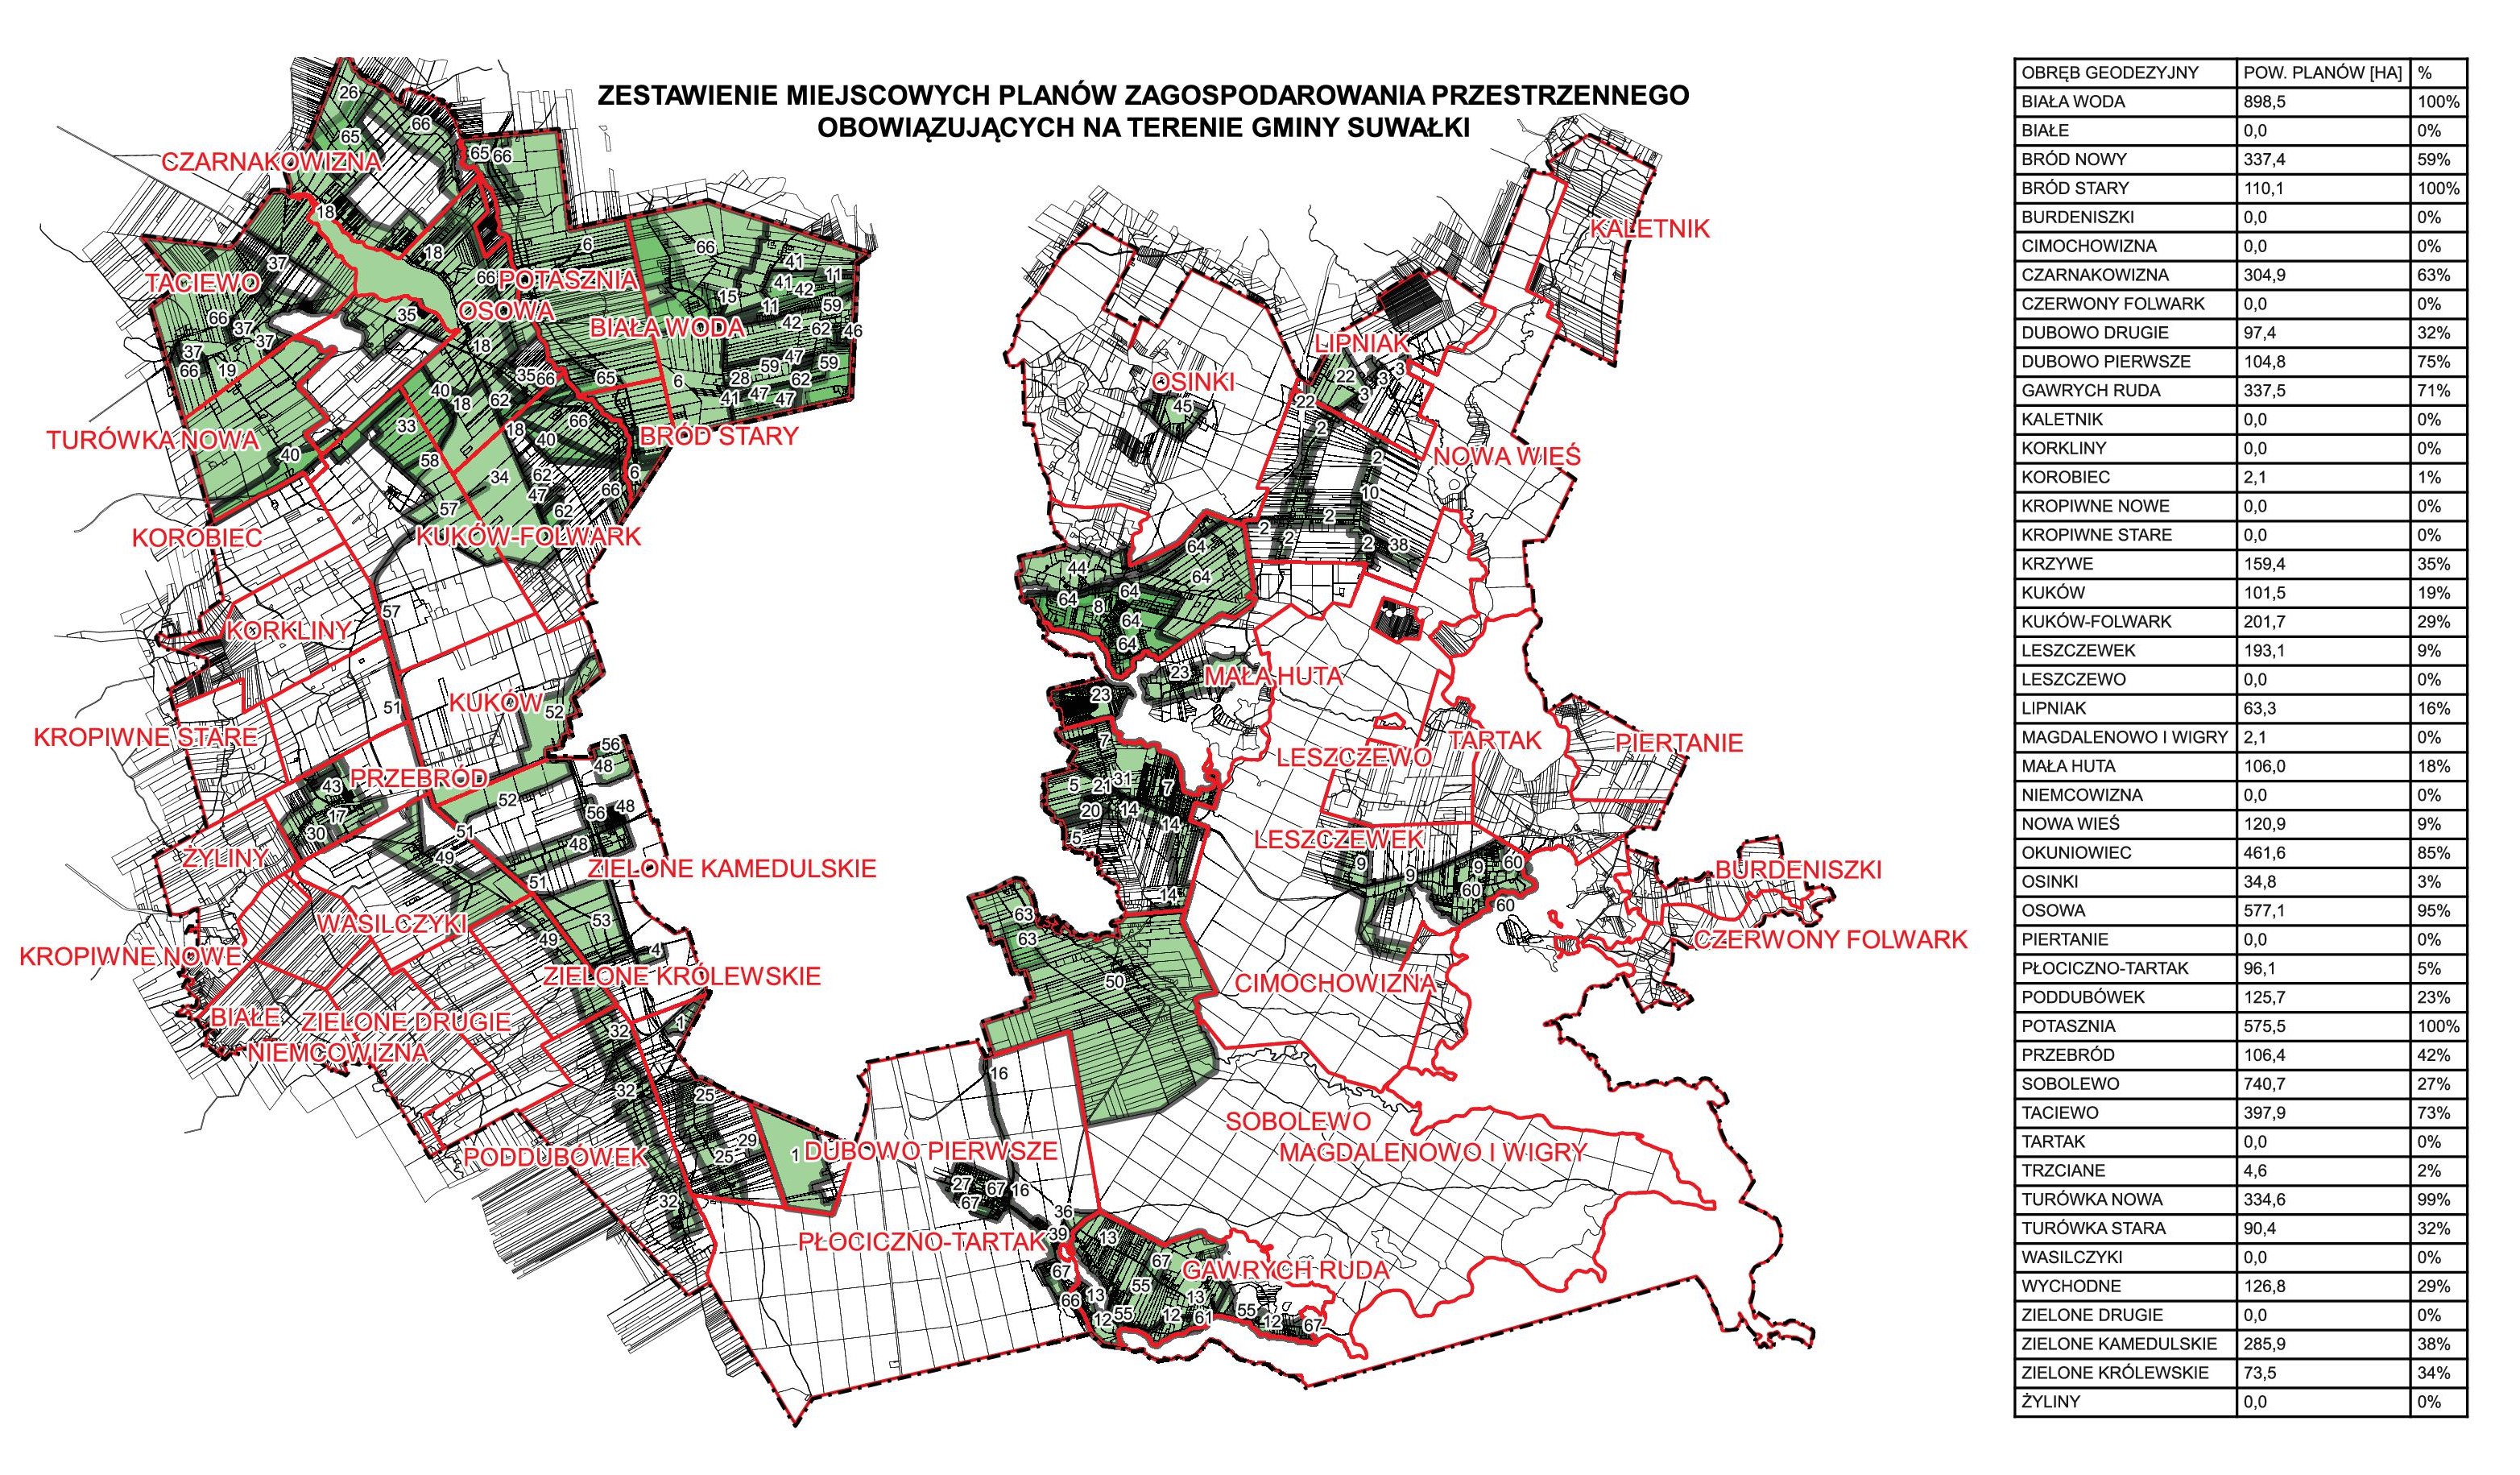 Zestawienie miejscowych planów zagospodarowania przestrzennego obowiązujących na terenie Gminy Suwałki